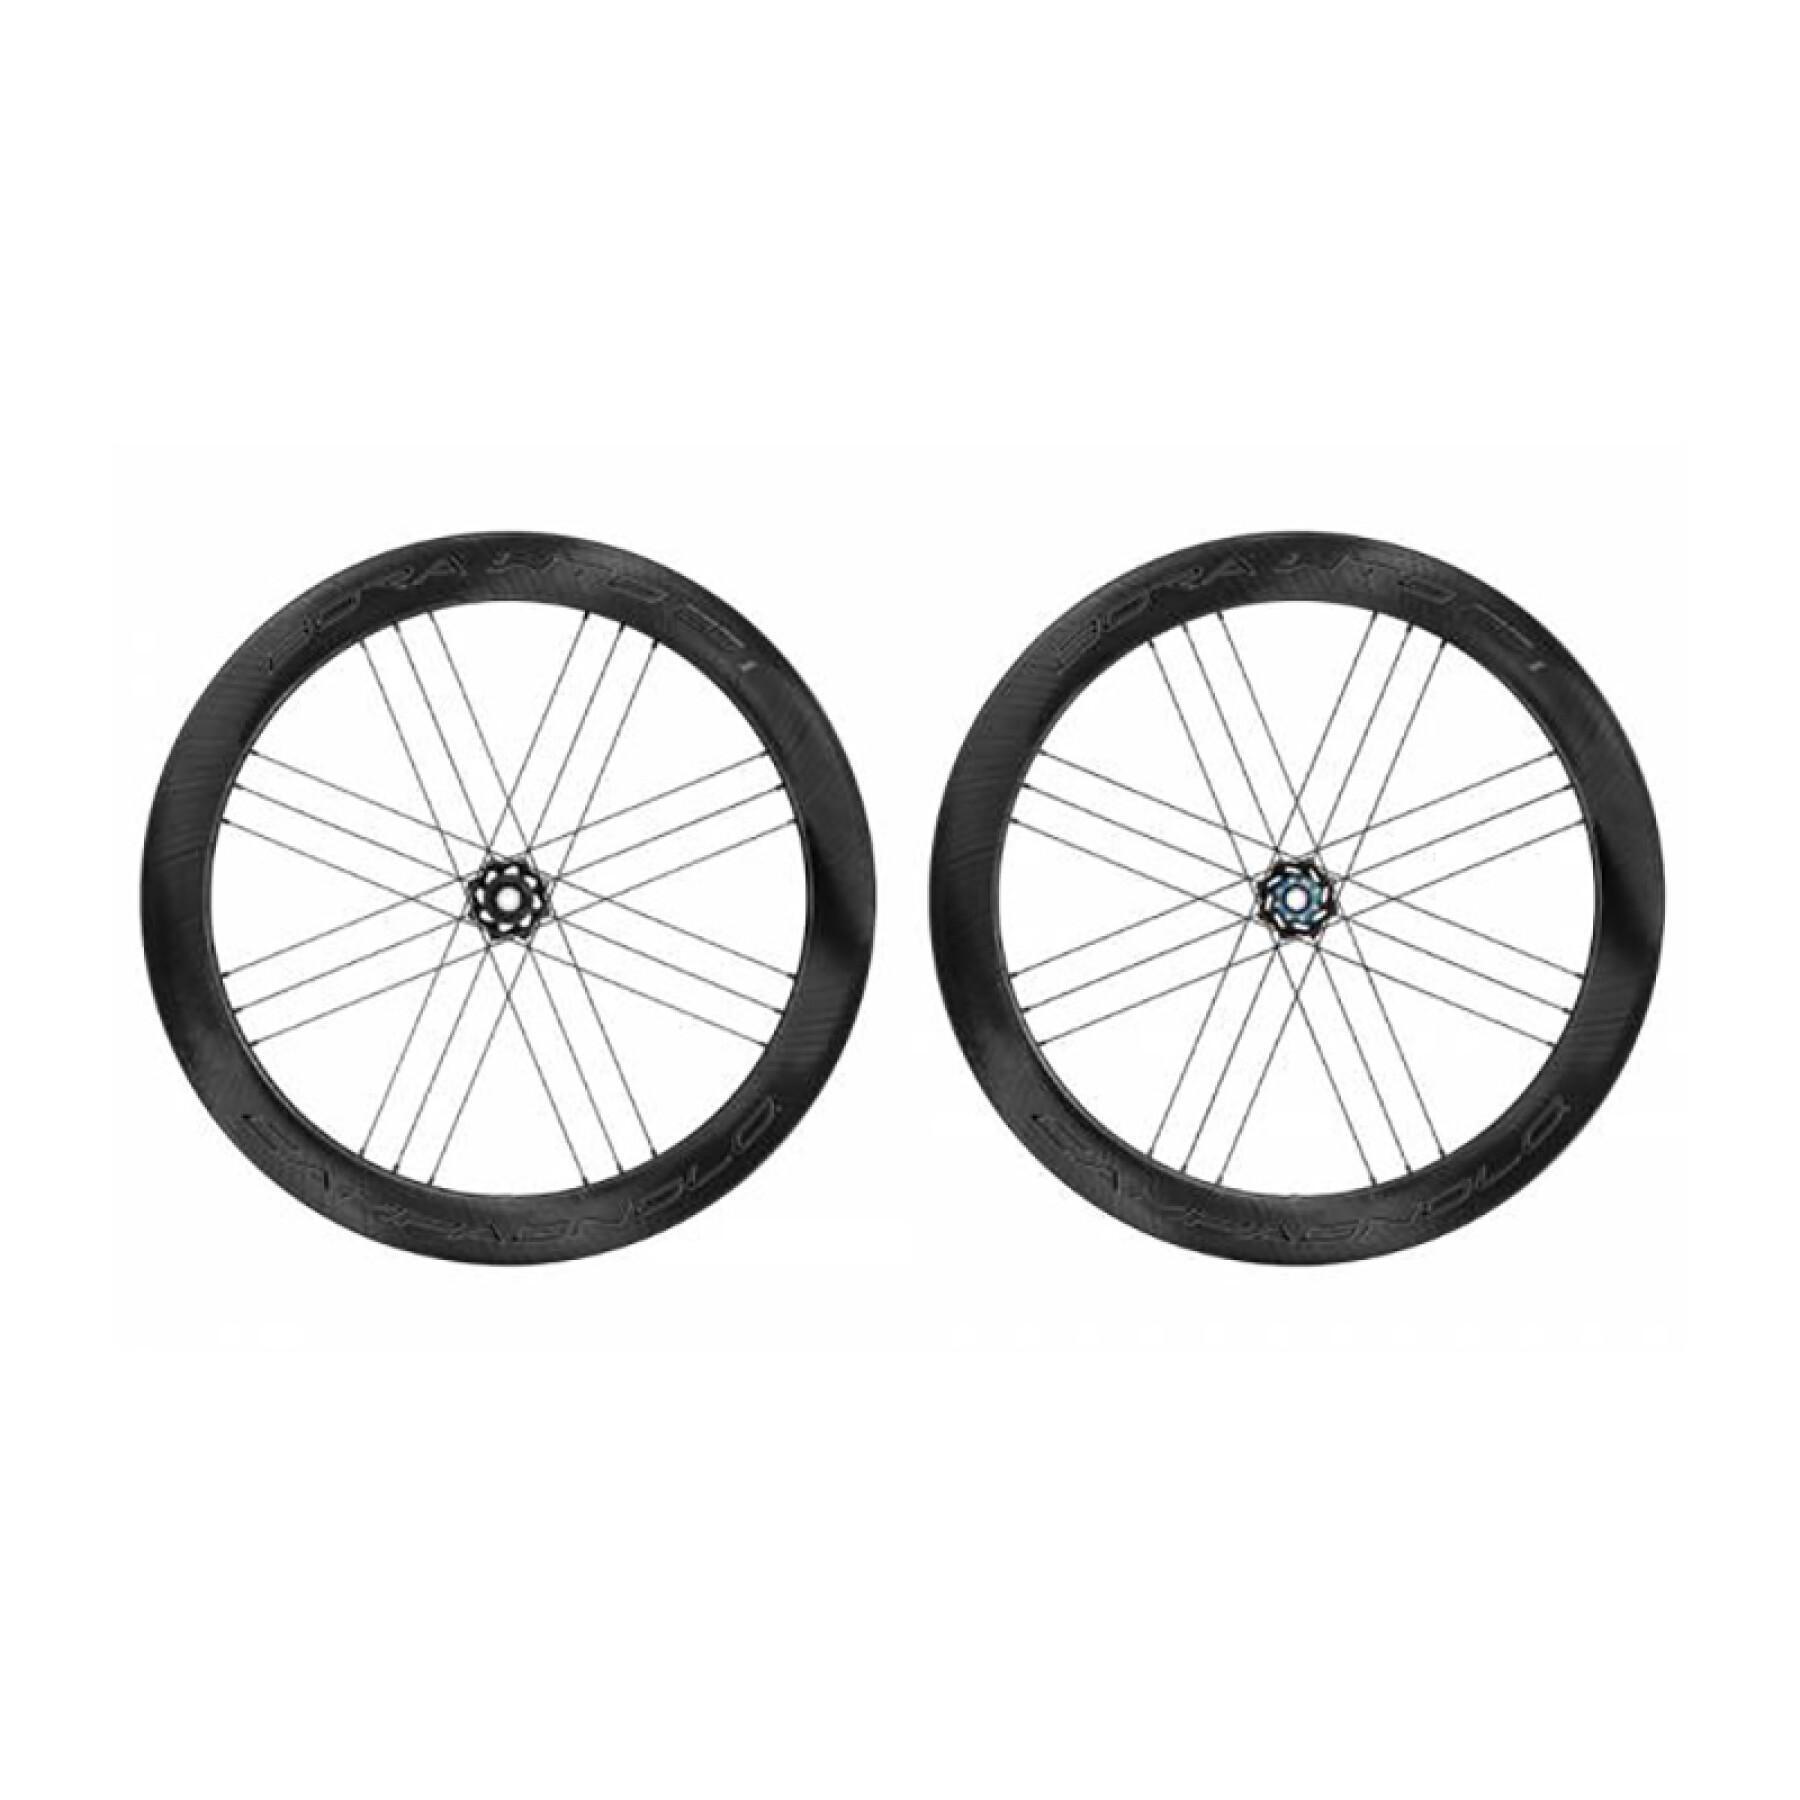 Roda da bicicleta Campagnolo Bora Wto 60 2Wf Disque Tubeless Shimano Hg11